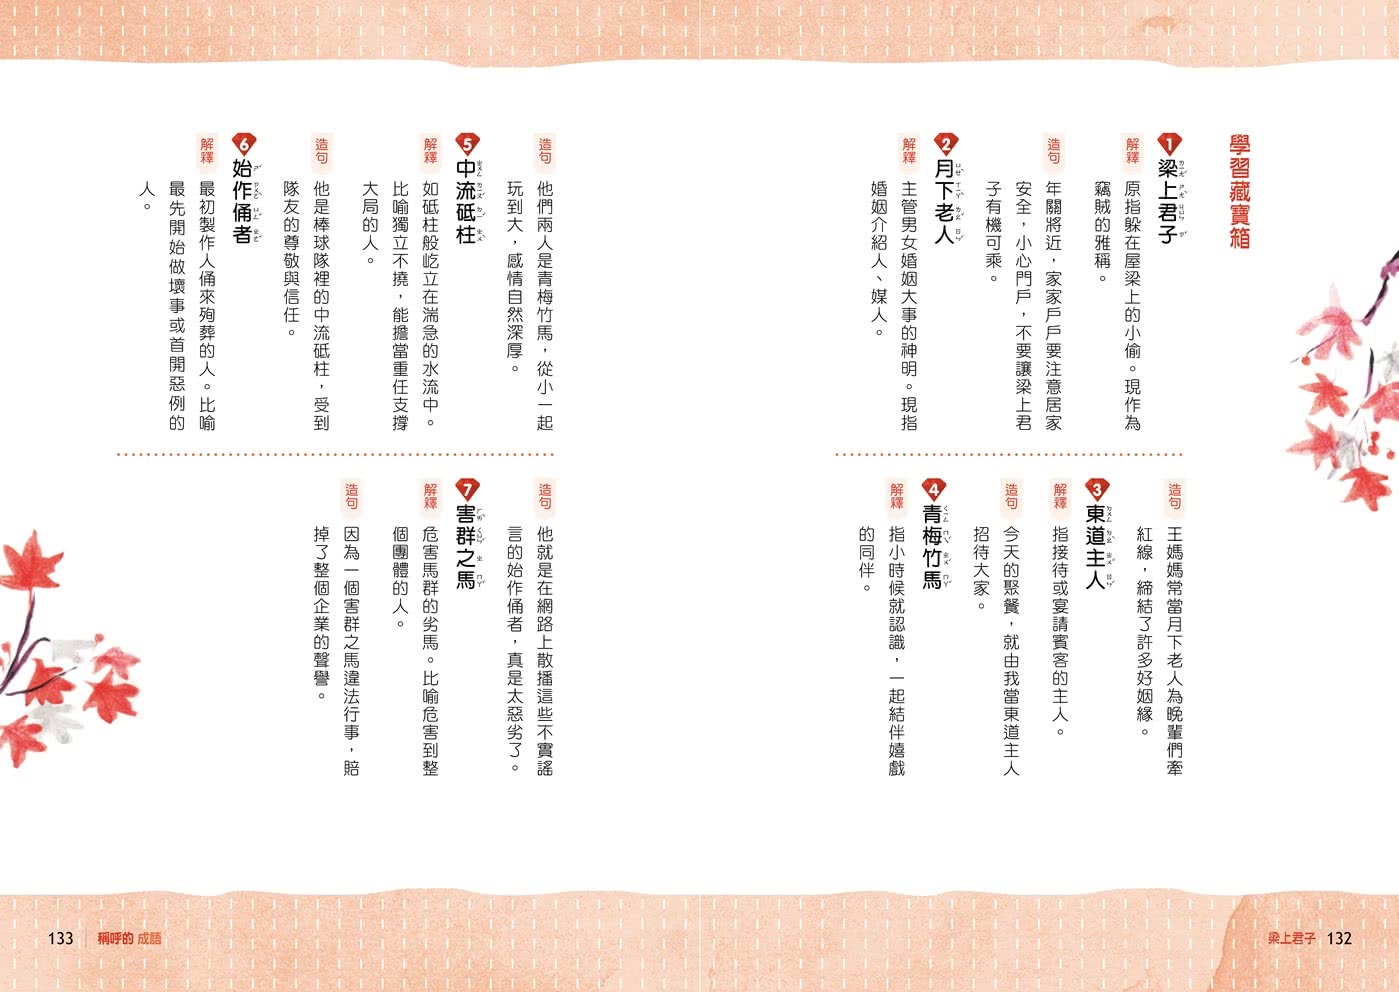 【晨讀10分鐘】成語故事集（2書+3CD）套書